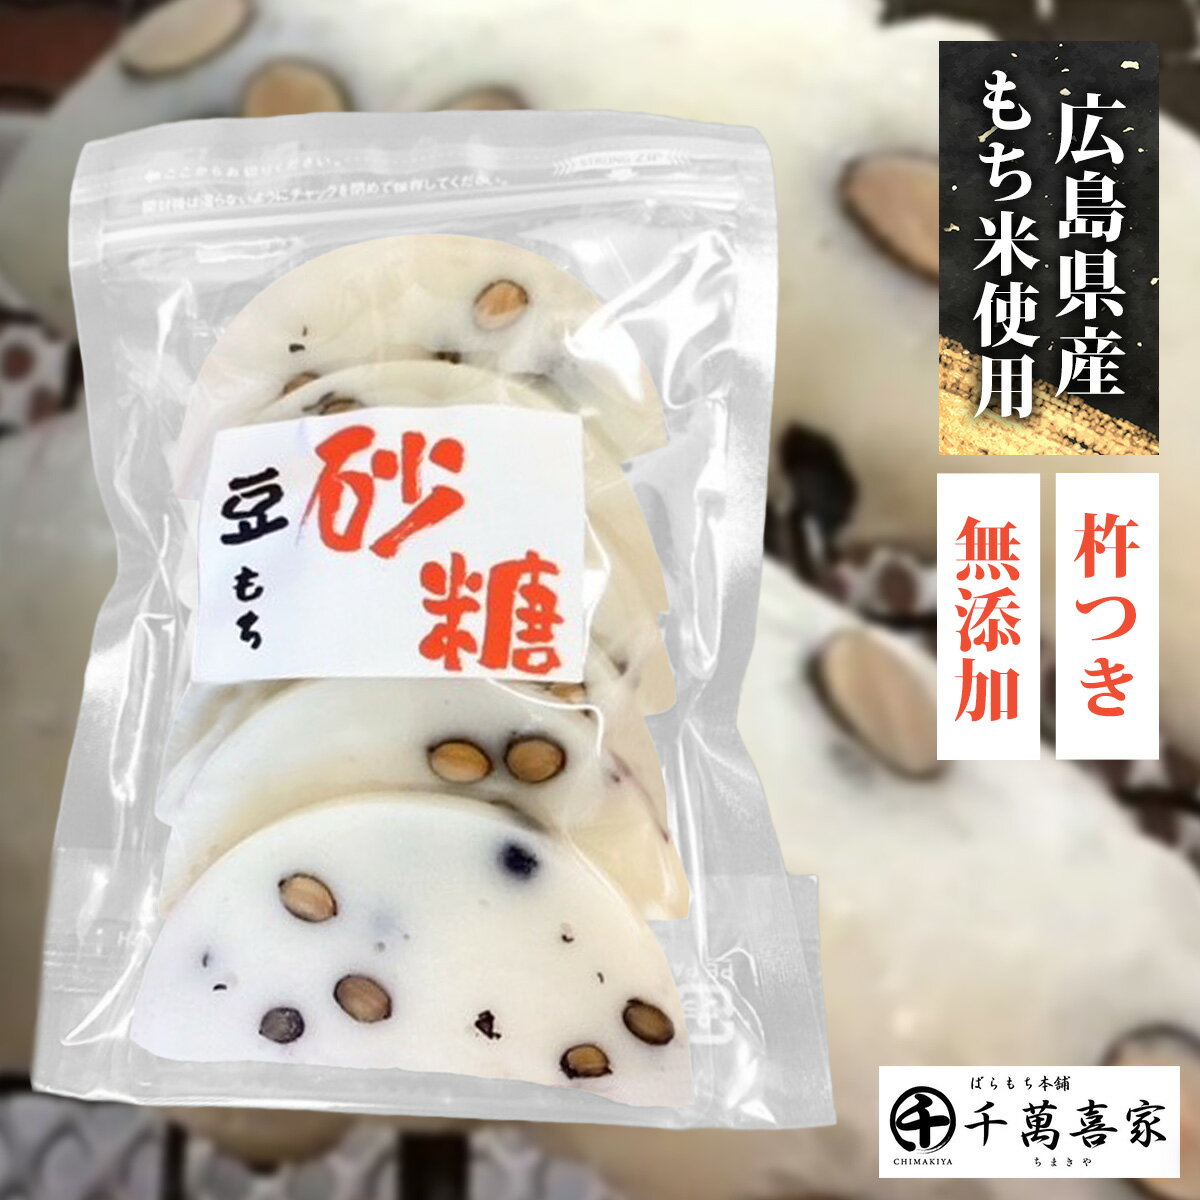 杵つき砂糖豆餅 1袋 無添加 保存料不使用 広島県産 手作り